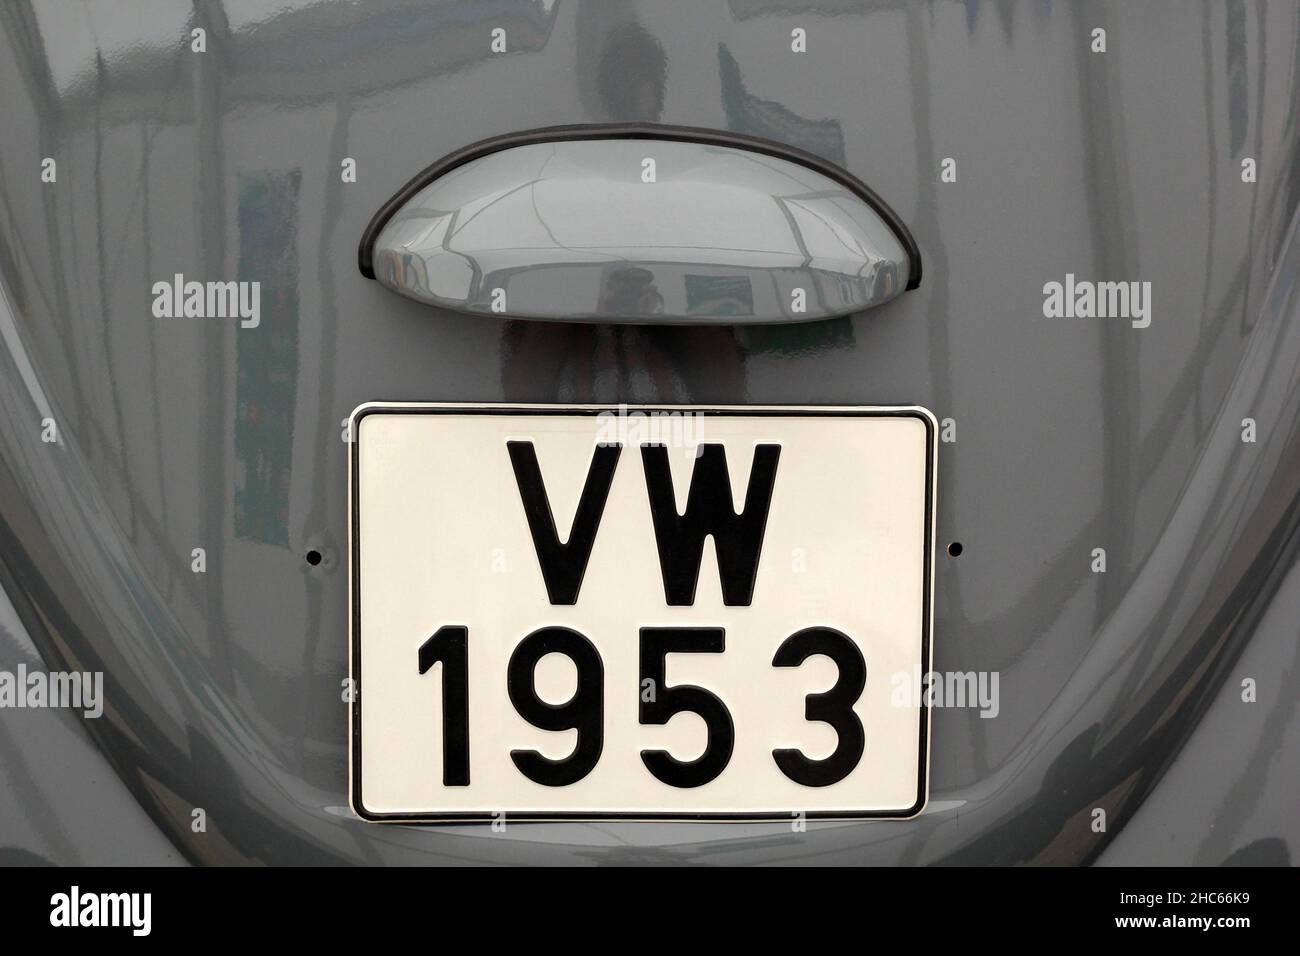 Hood of a volkswagen Stock Photo